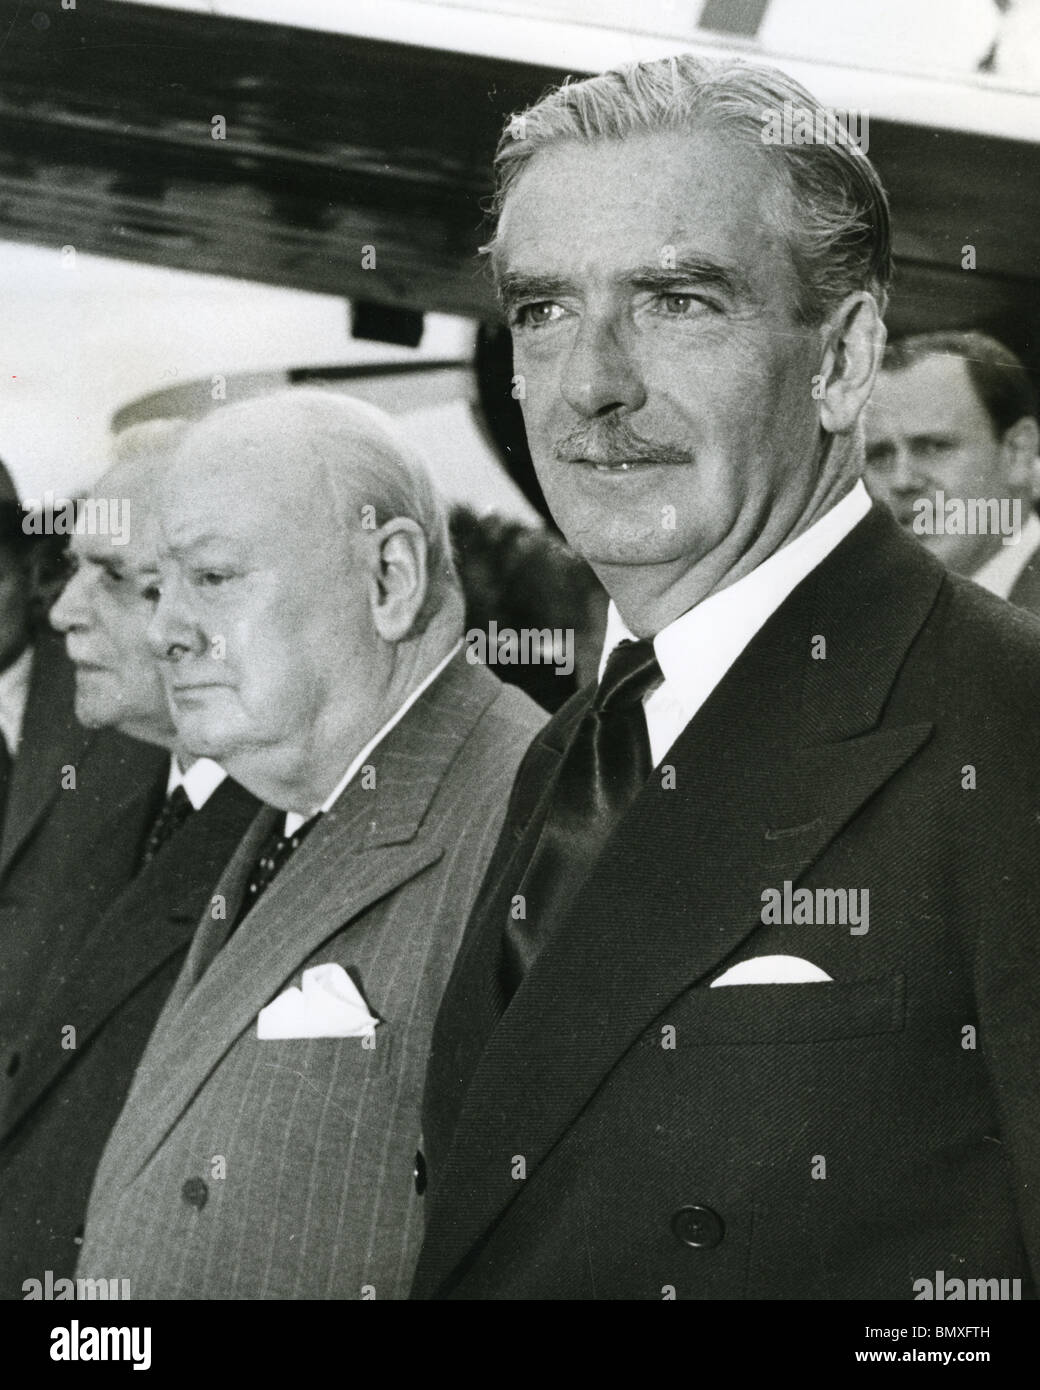 SIR WINSTON CHURCHILL, Premier Ministre britannique, Anthony Eden, secrétaire des Affaires étrangères (à droite) arrivent à Ottawa Juin 1954 Banque D'Images